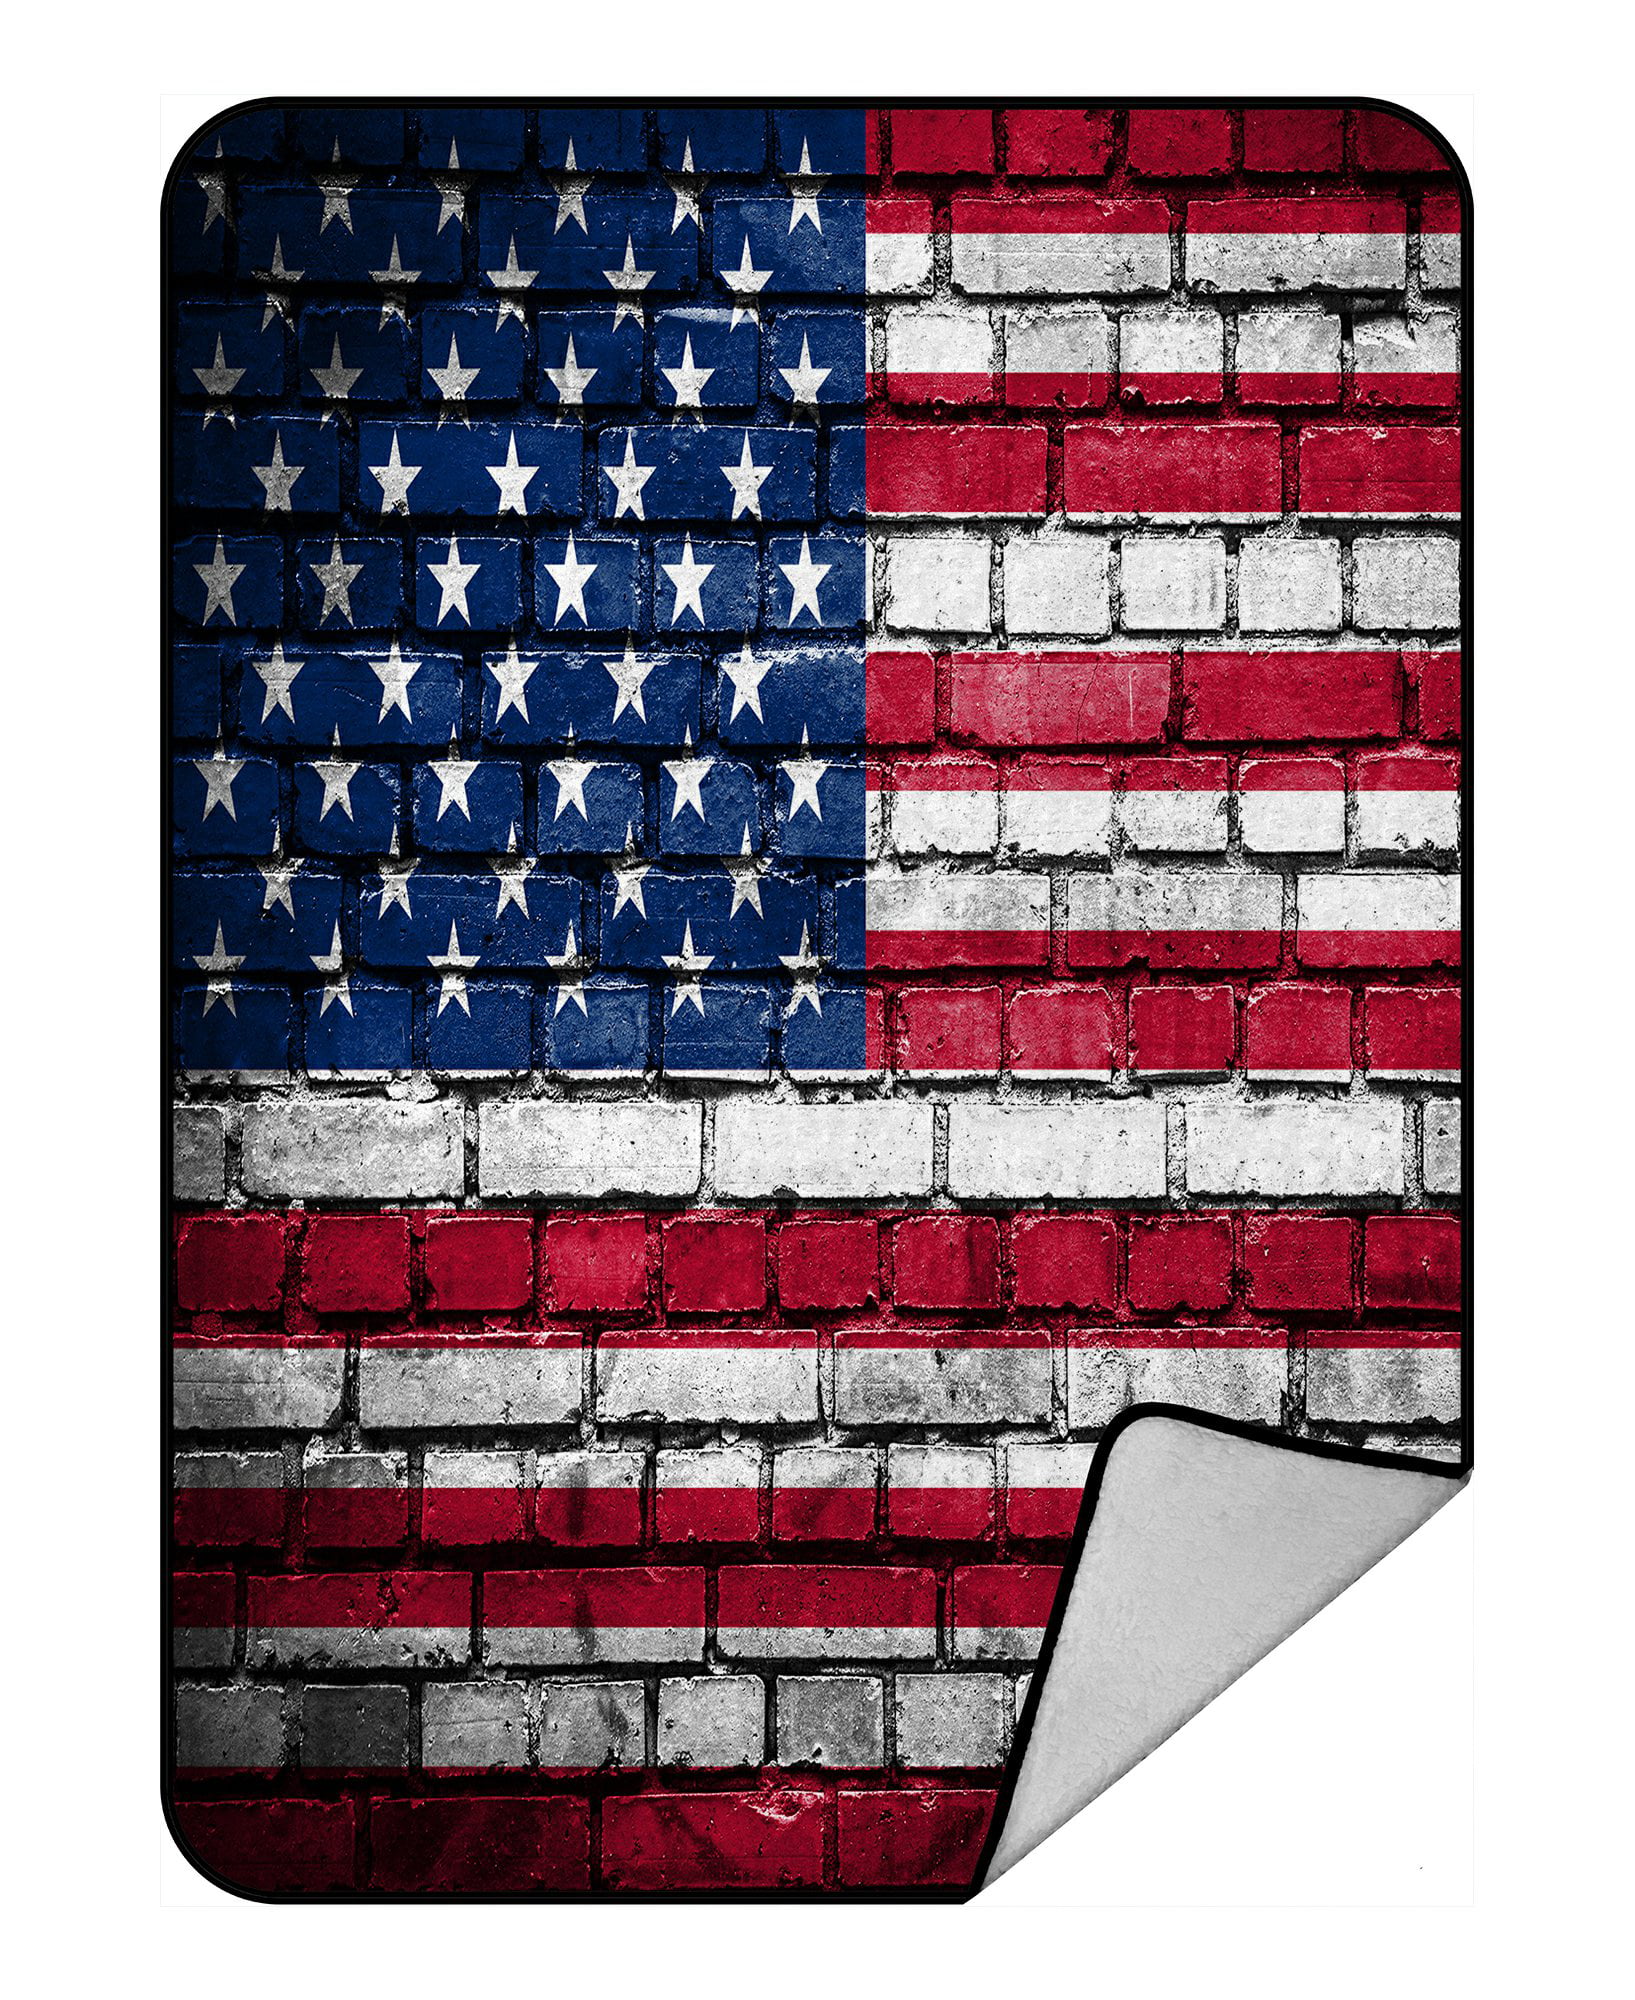 PHFZK American Flag Blanket